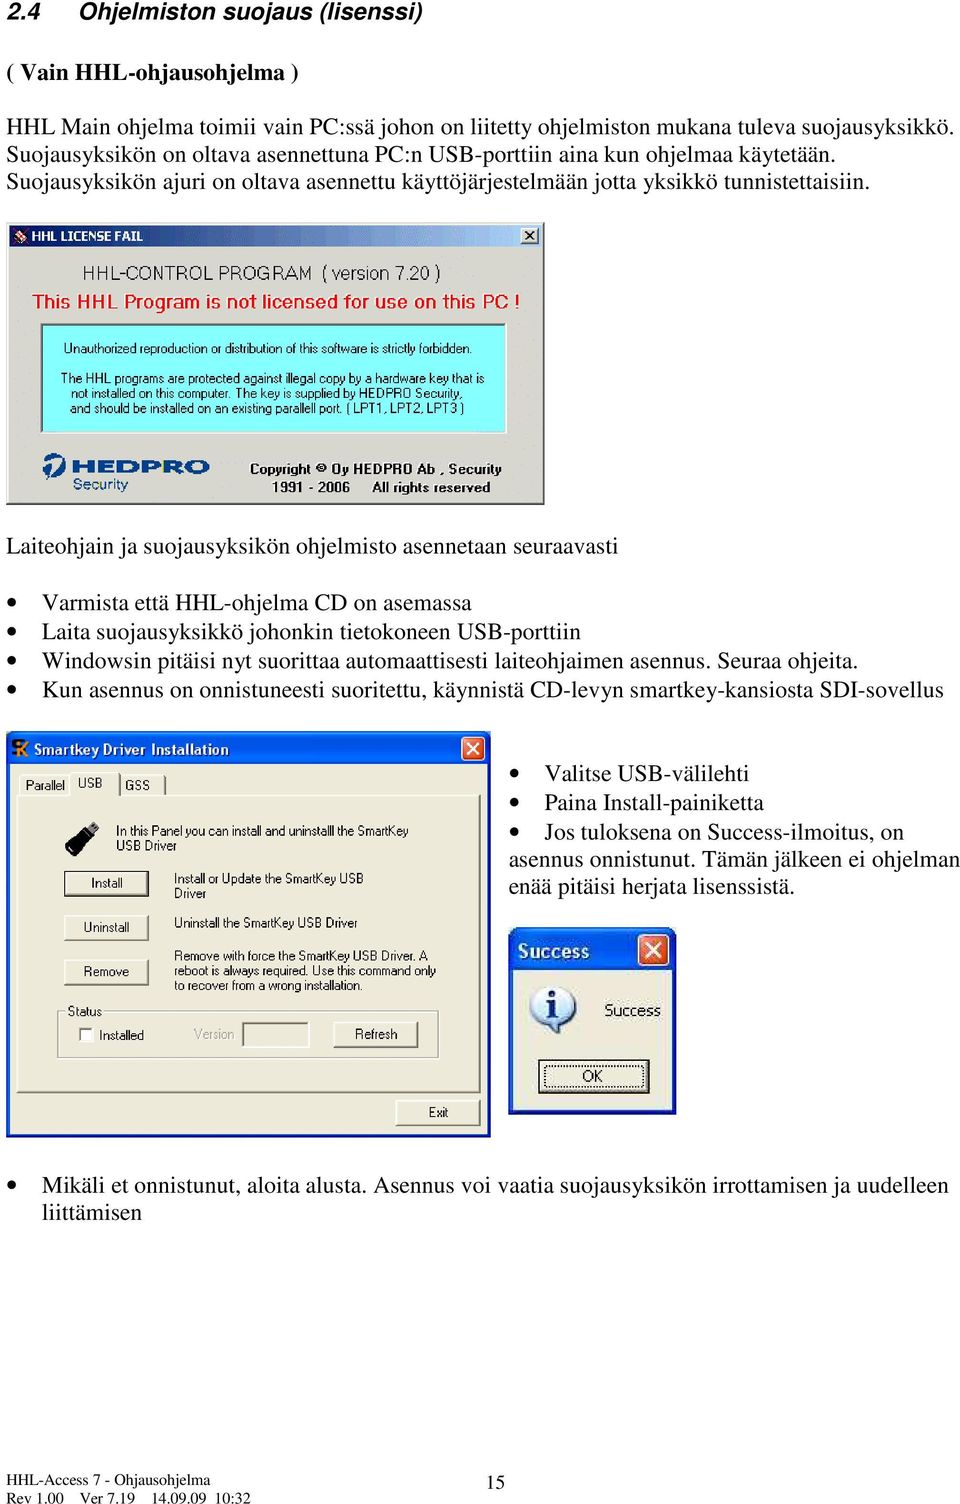 Laiteohjain ja suojausyksikön ohjelmisto asennetaan seuraavasti Varmista että HHL-ohjelma CD on asemassa Laita suojausyksikkö johonkin tietokoneen USB-porttiin Windowsin pitäisi nyt suorittaa